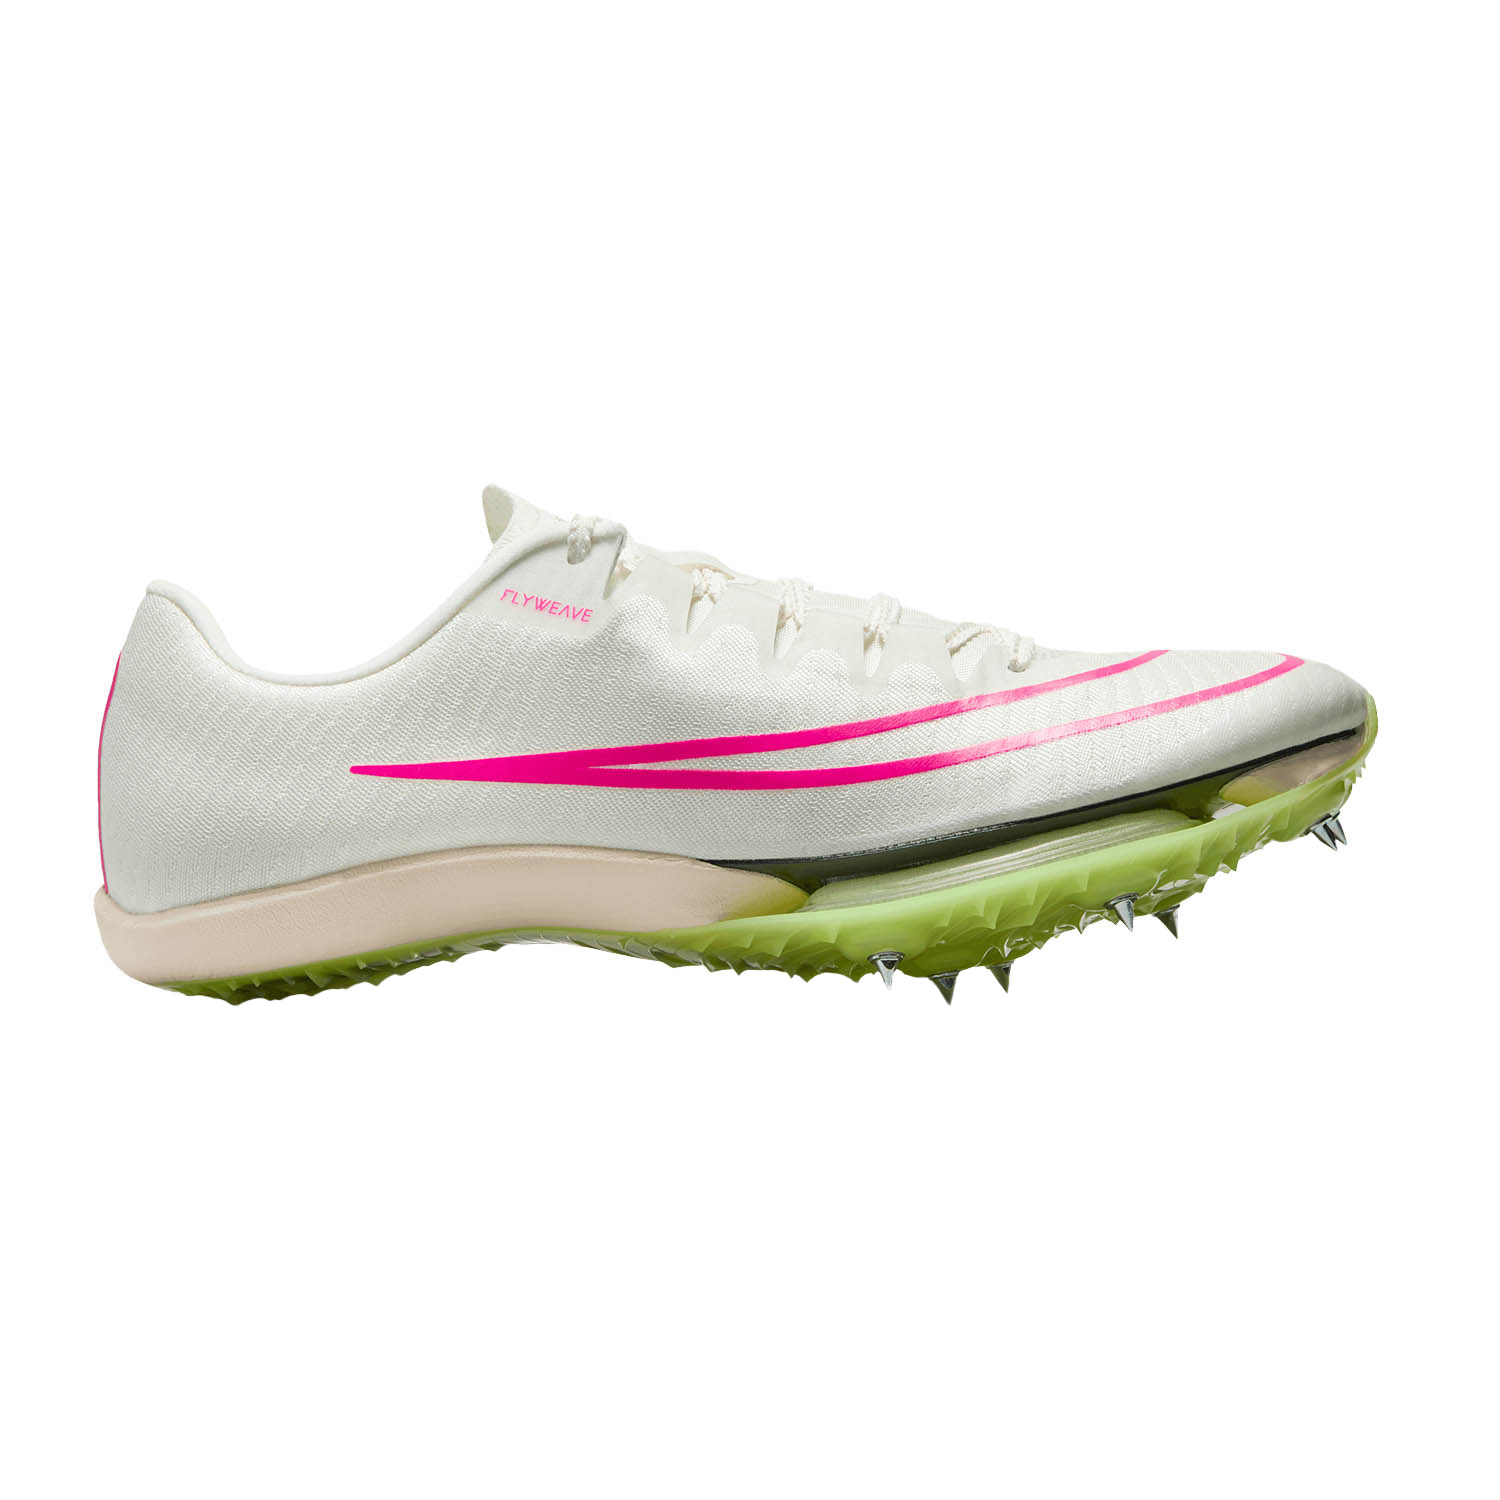 Nike Air Zoom Maxfly - Sail/Fierce Pink/Light Lemon Twist